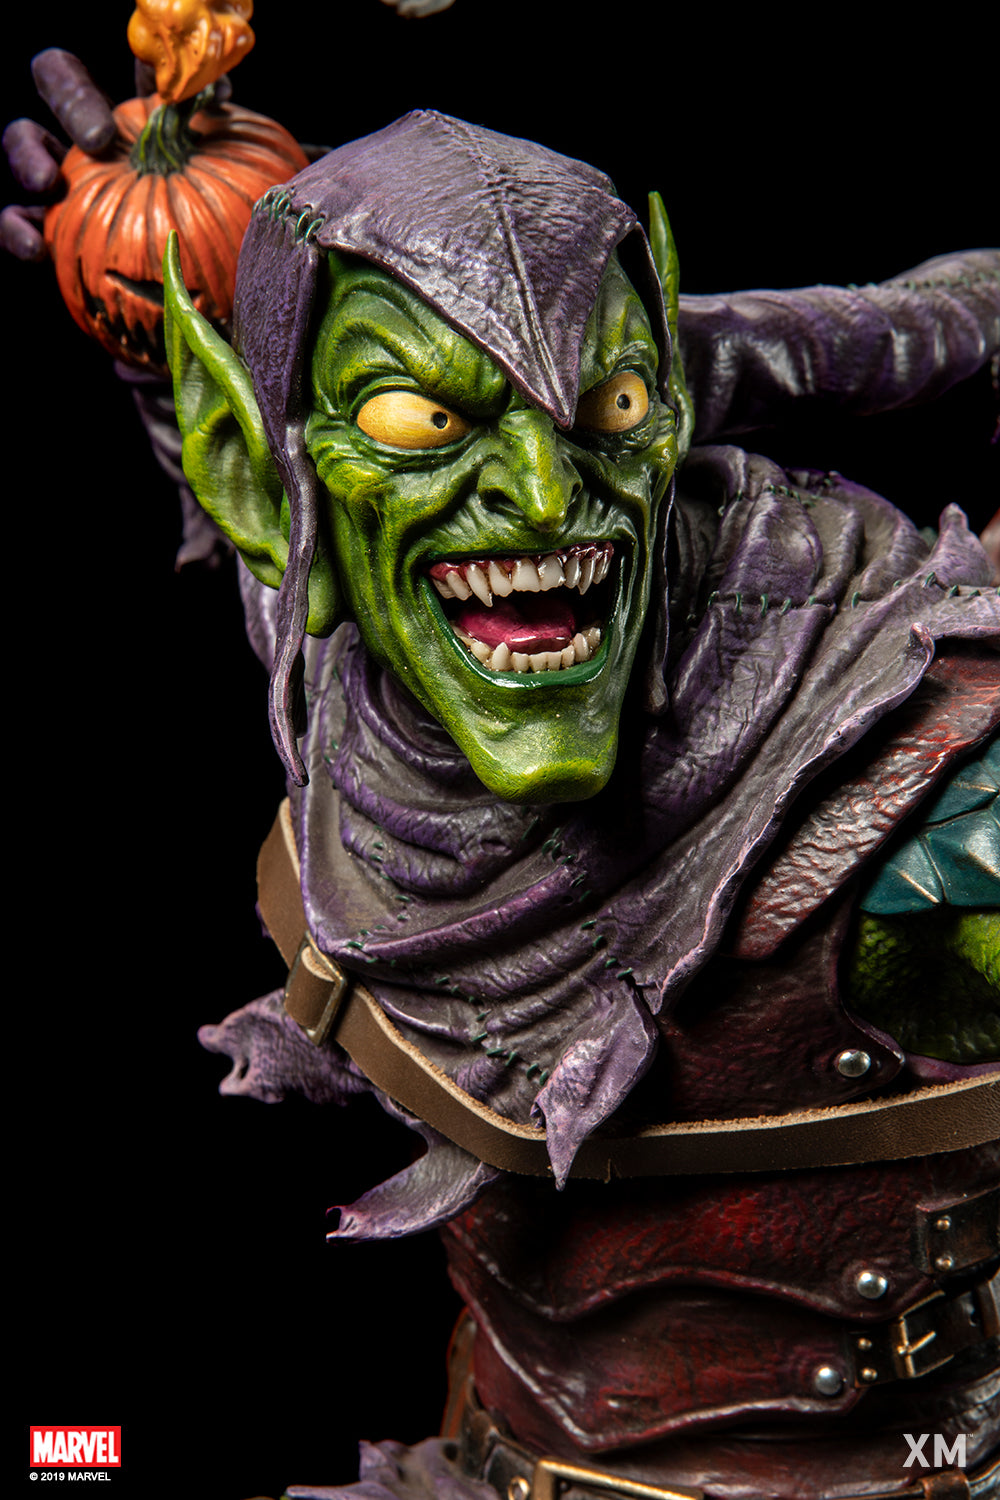 XM Studios - Marvel Premium Collectibles - Green Goblin (Ver. A) (1/4 Scale)